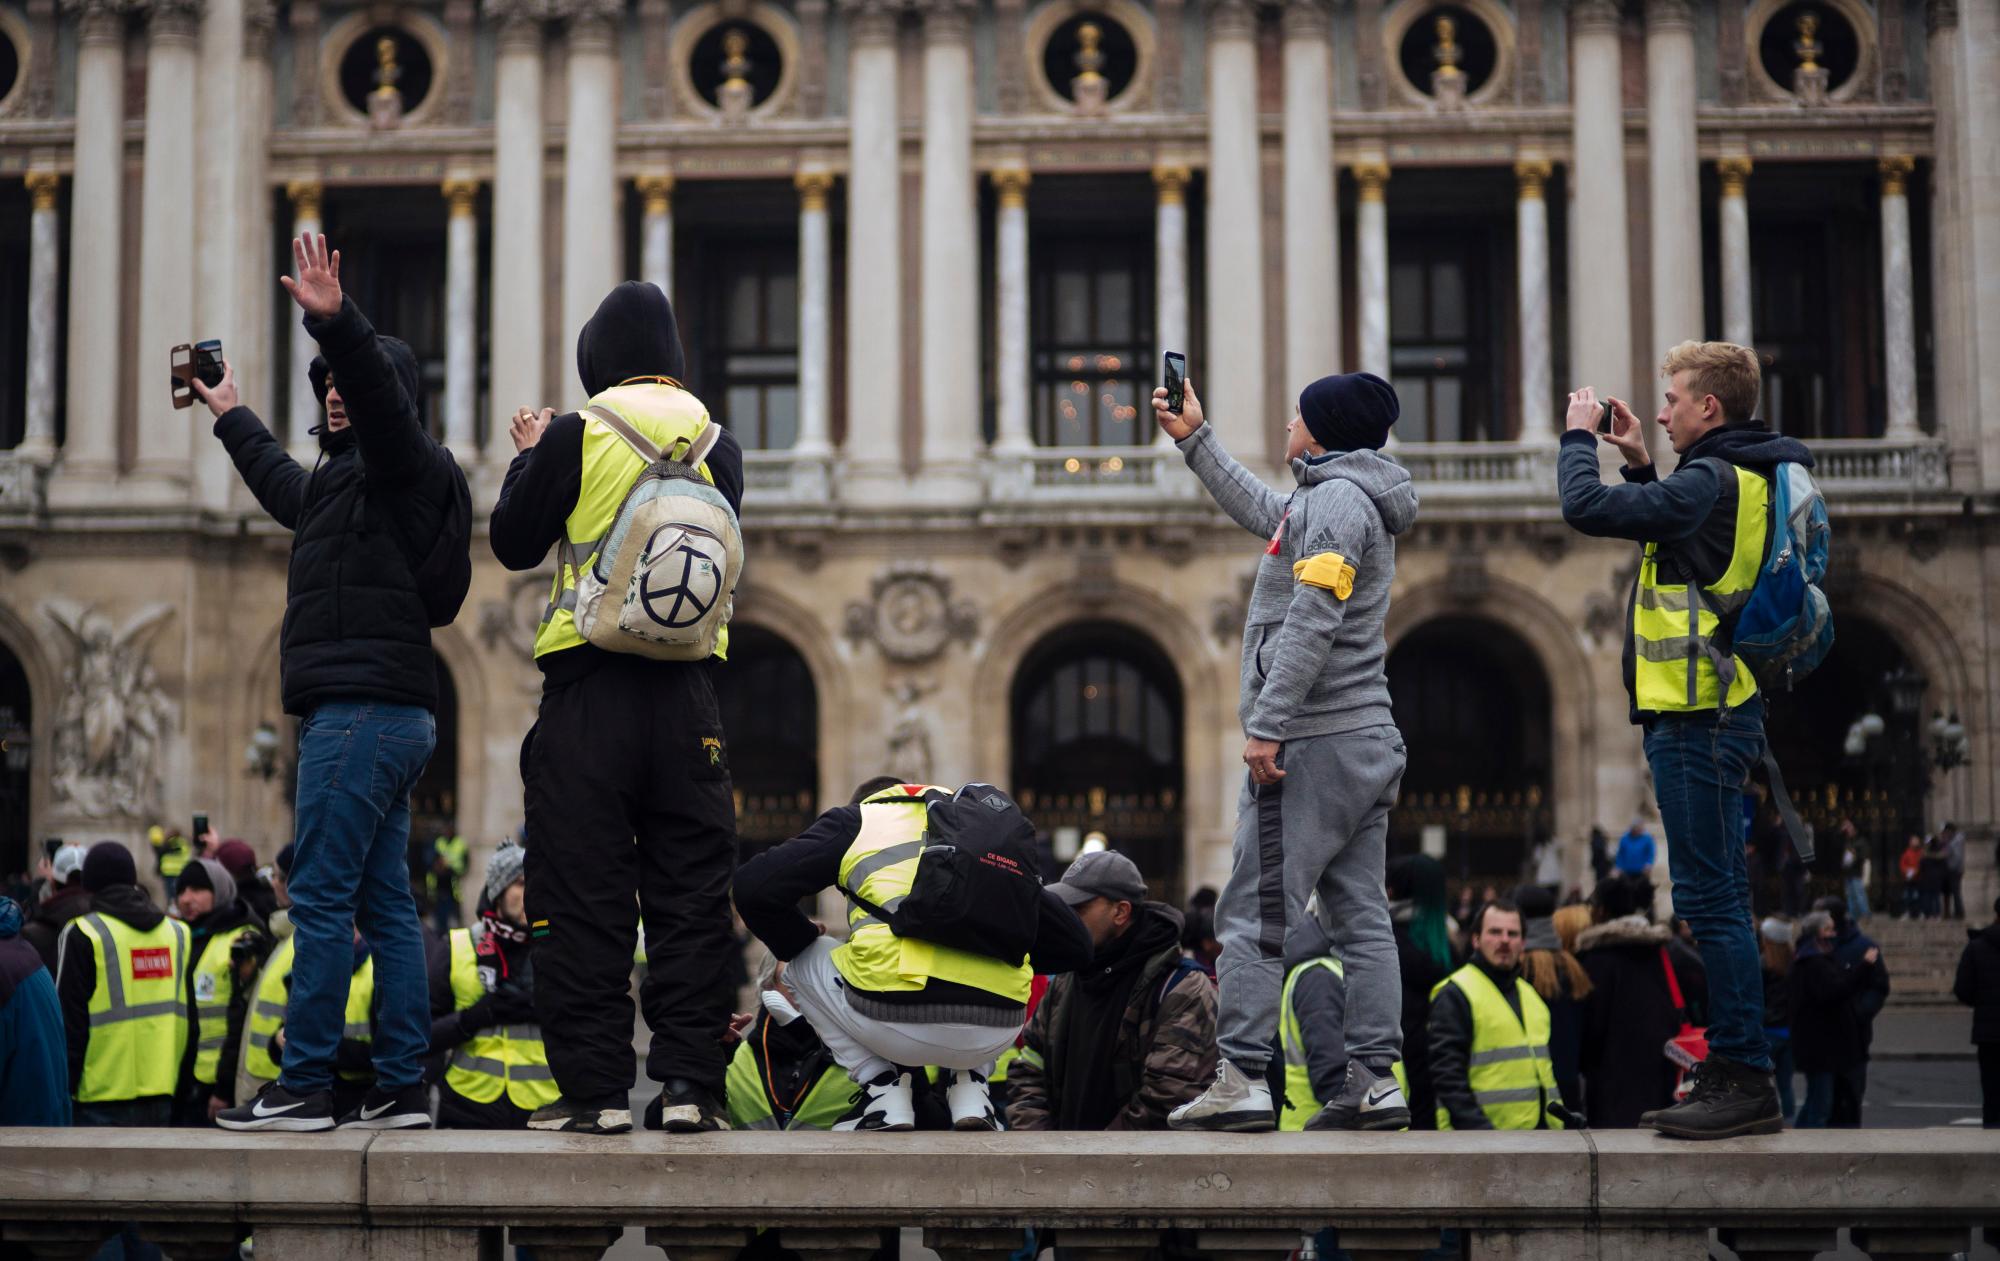 Los manifestantes que usan chalecos amarillos toman imágenes con sus teléfonos móviles durante una marcha en París, el sábado 5 de enero de 2019. Cientos de manifestantes intentaban dar nueva vida al movimiento de chalecos amarillos aparentemente francés de Francia con marchas en París y reuniones en otras ciudades.